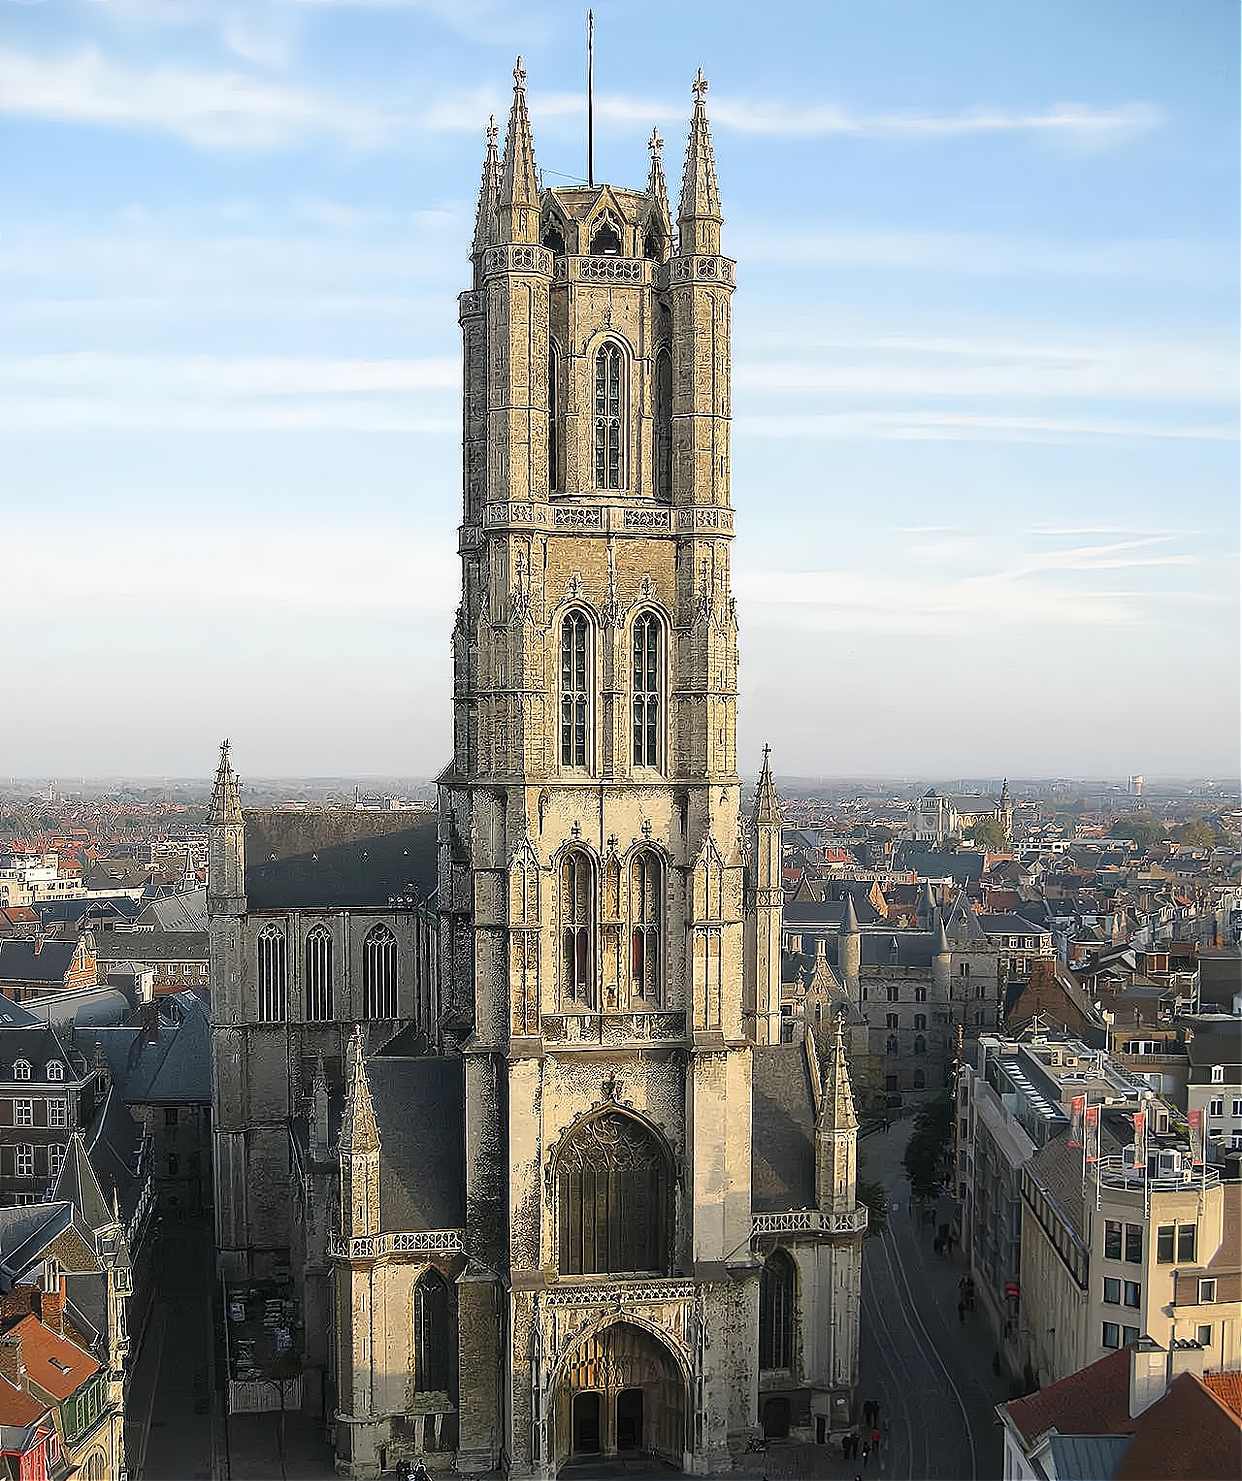 著名的比利时根特哥特式建筑 圣巴沃大教堂的历史沉浮